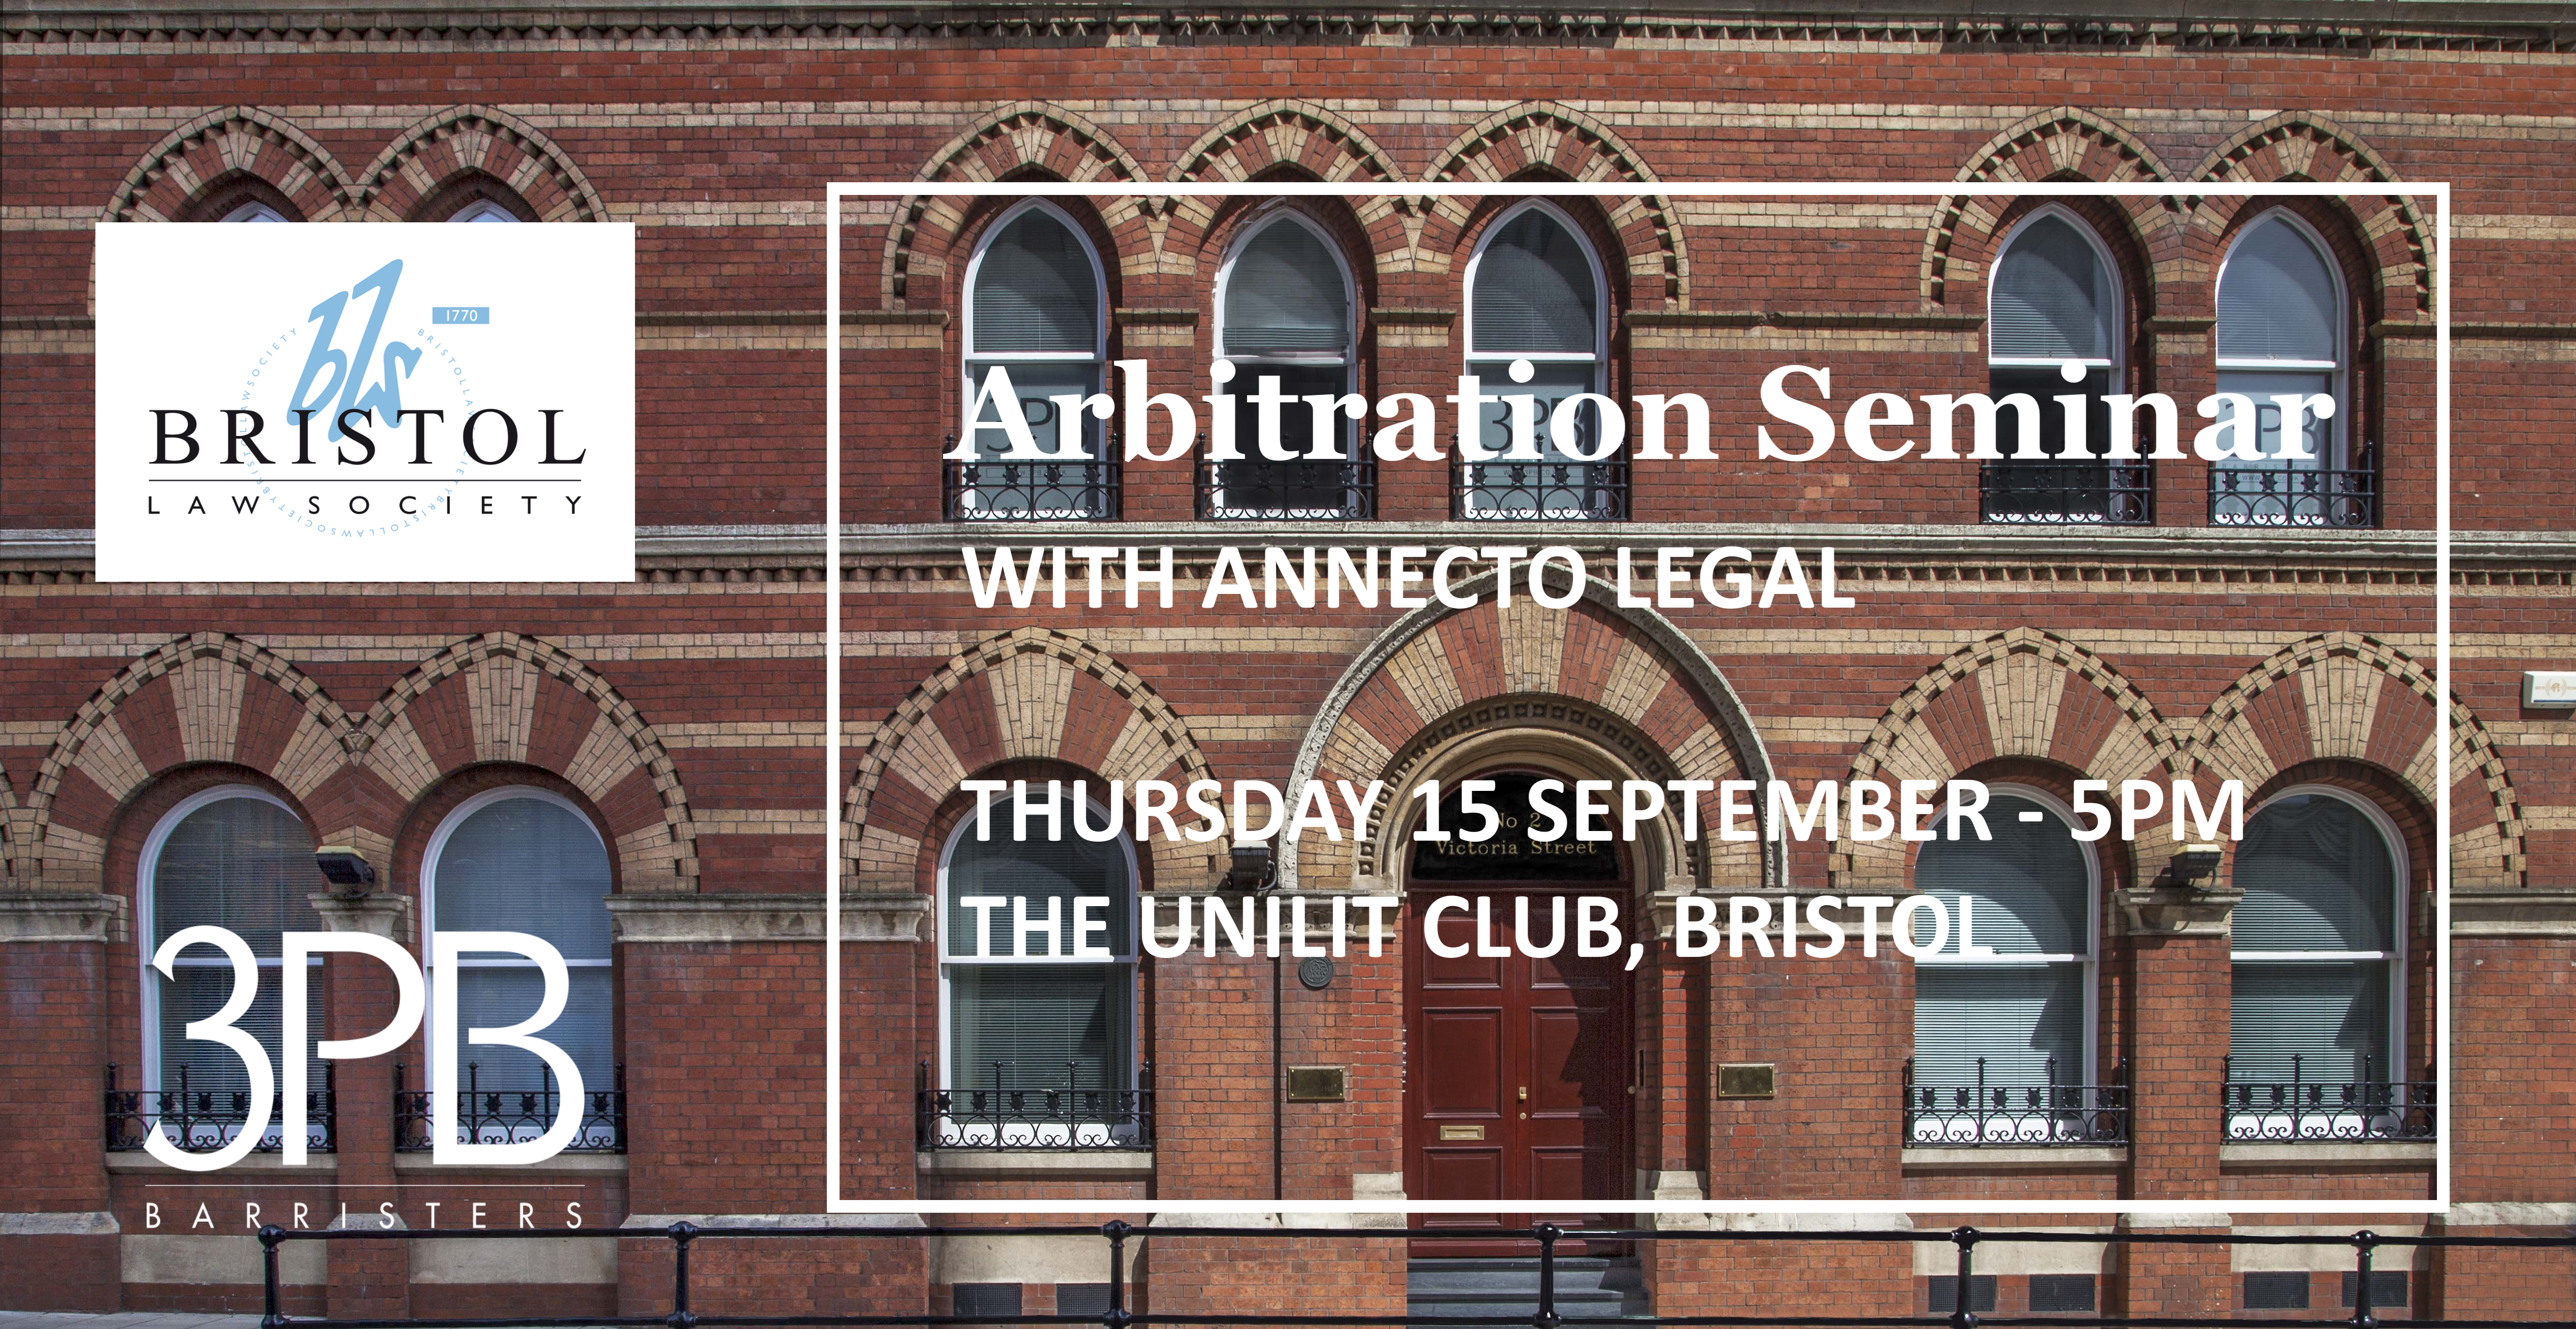 Bristol arbitration seminar on 15 September 2022